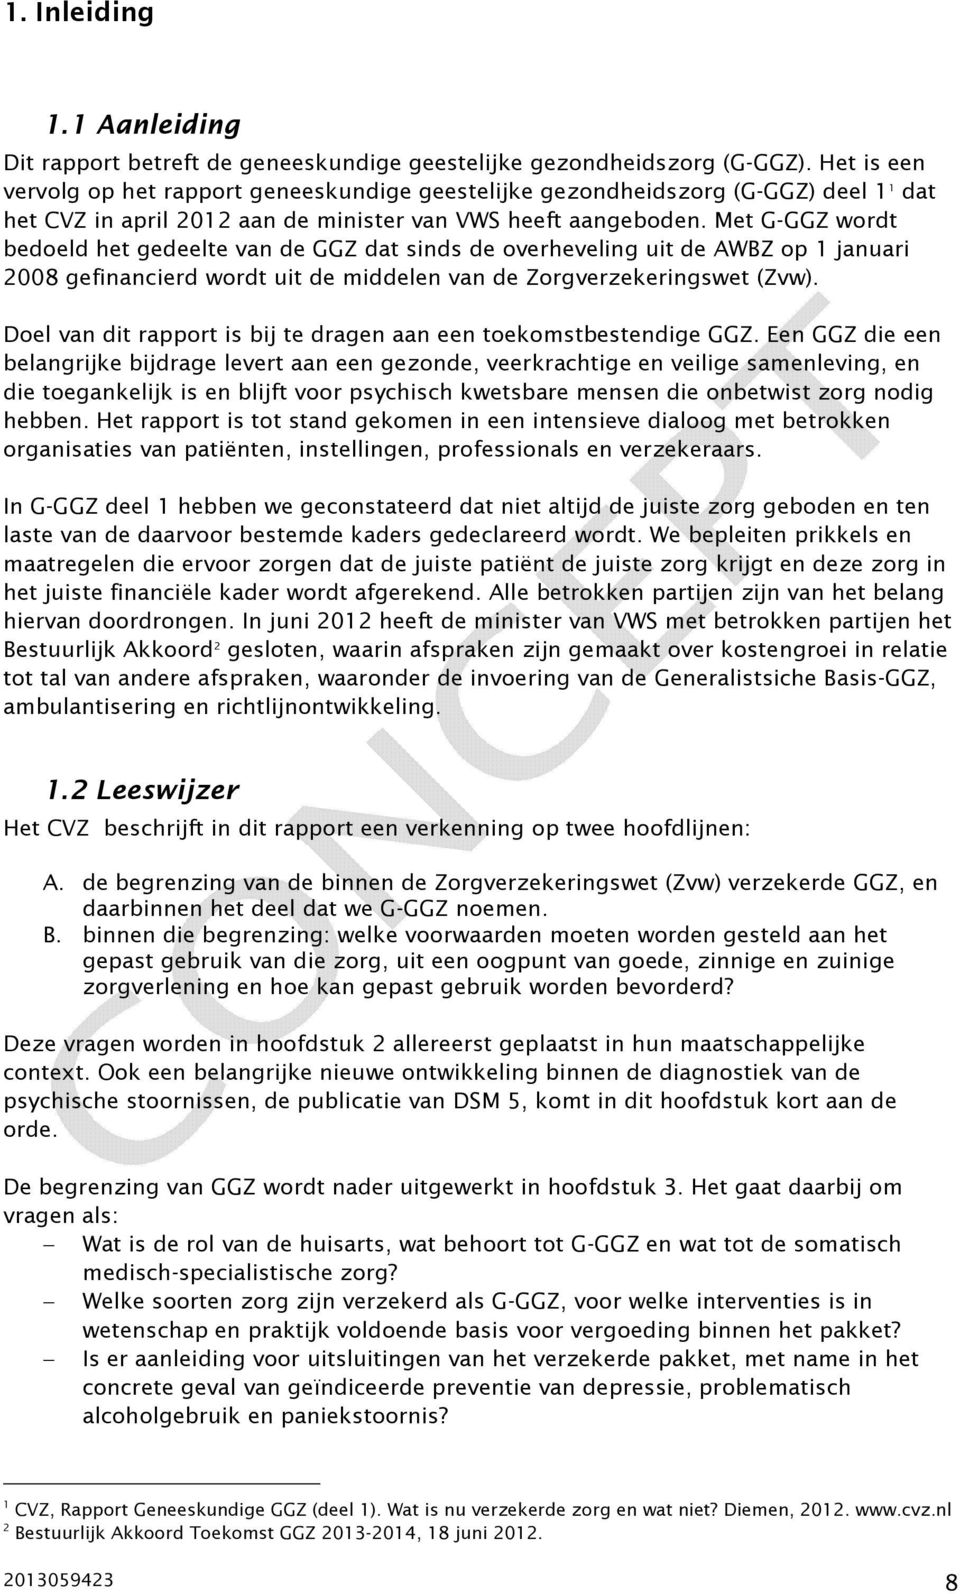 Met G-GGZ wordt bedoeld het gedeelte van de GGZ dat sinds de overheveling uit de AWBZ op 1 januari 2008 gefinancierd wordt uit de middelen van de Zorgverzekeringswet (Zvw).